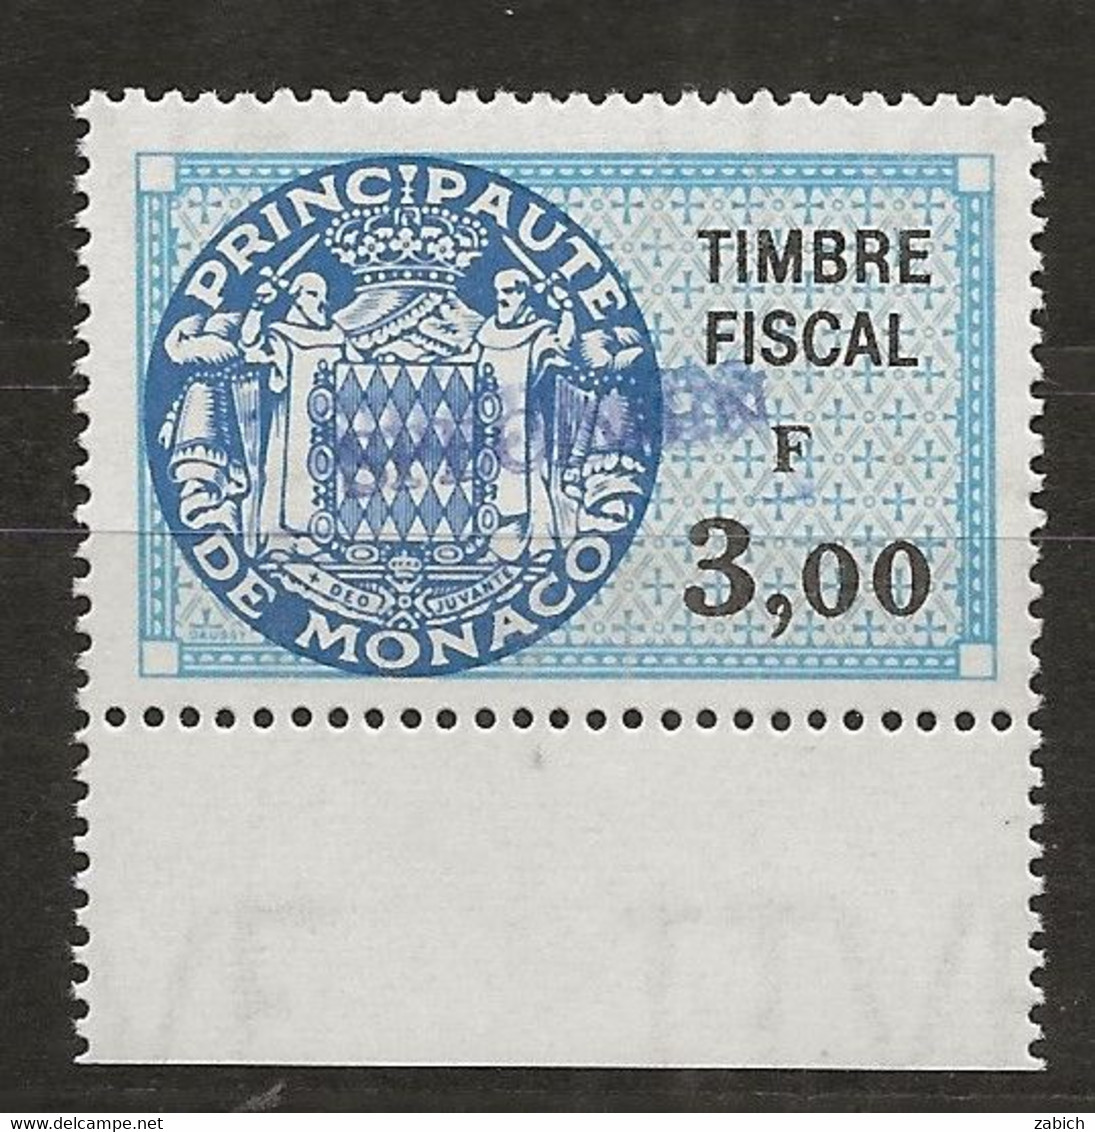 TIMBRES FISCAUX DE MONACO SERIE UNIFIEE N° 91 3 F Bleu Rare Surchargé Spécimen Neuf Gomme Mnh (**) - Steuermarken